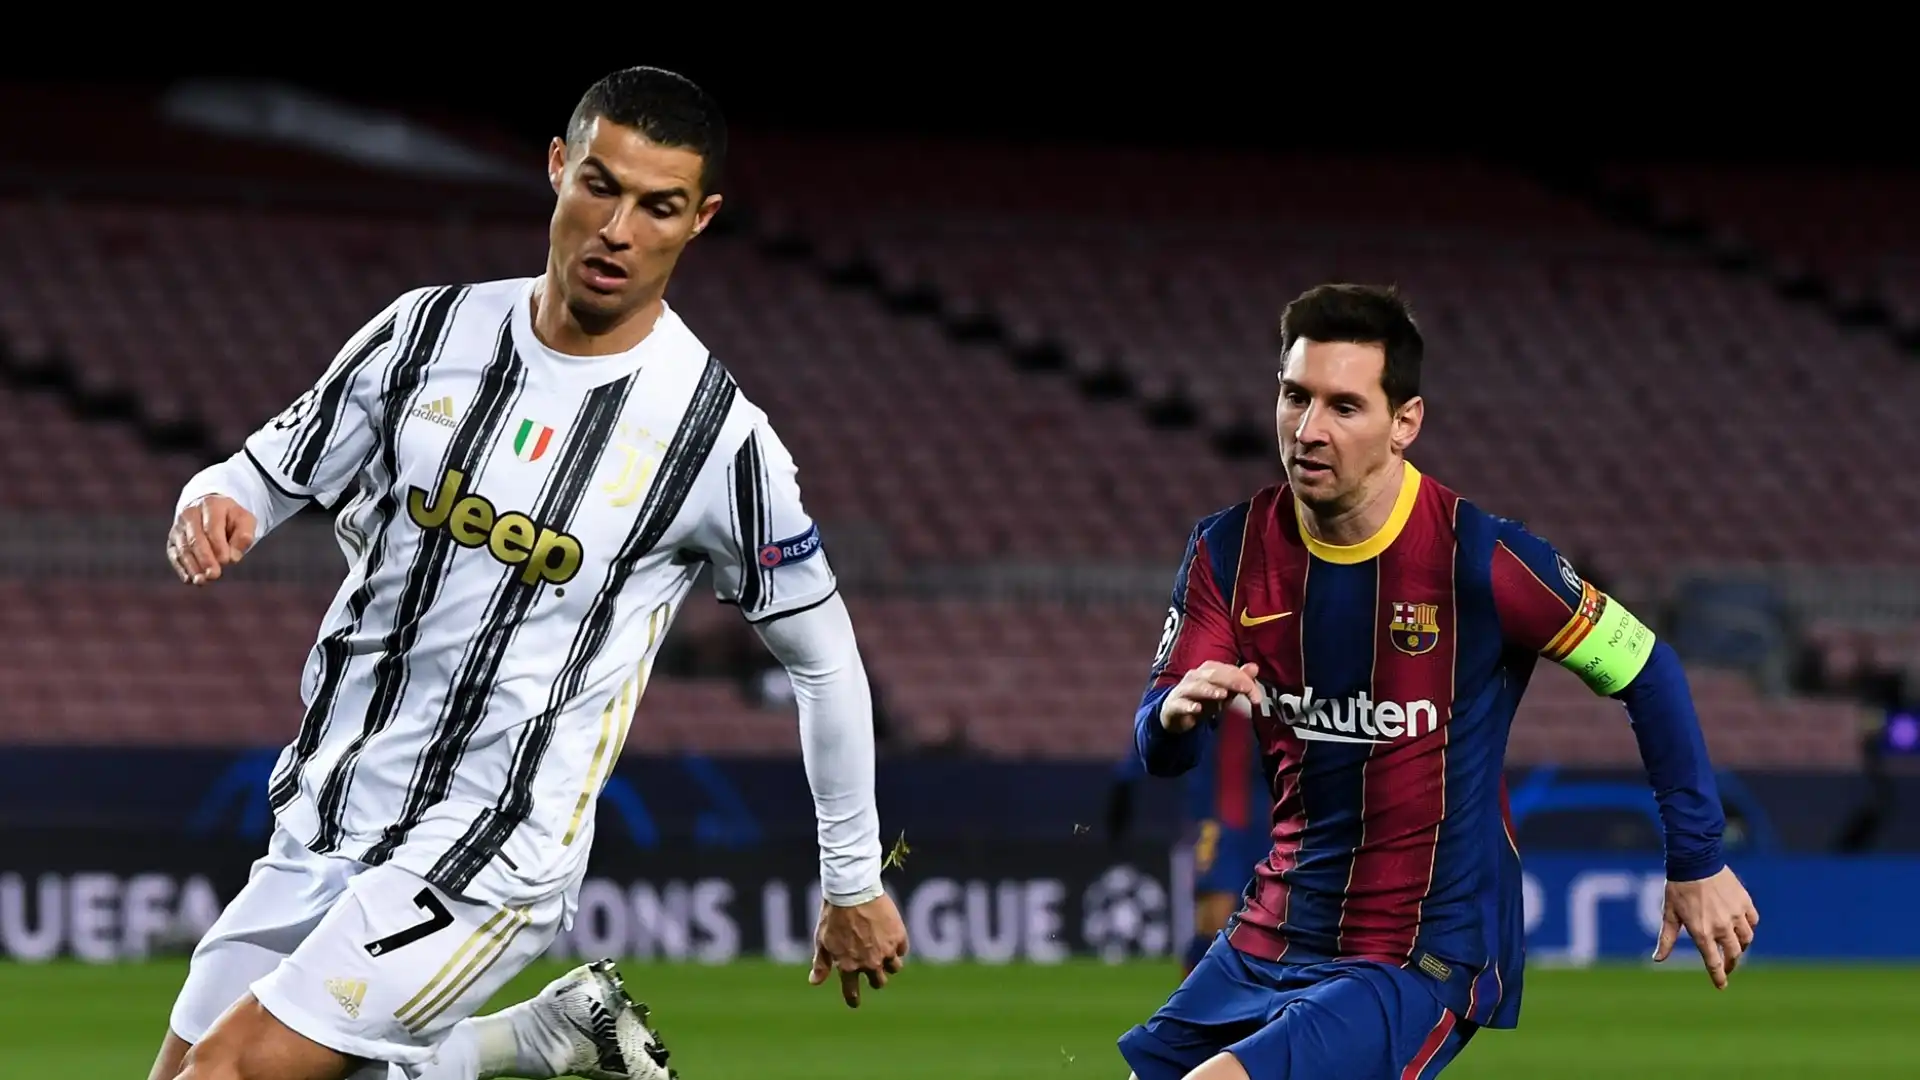 1- Primato assoluto per Cristiano Ronaldo, costato alla Juventus 117 milioni di euro